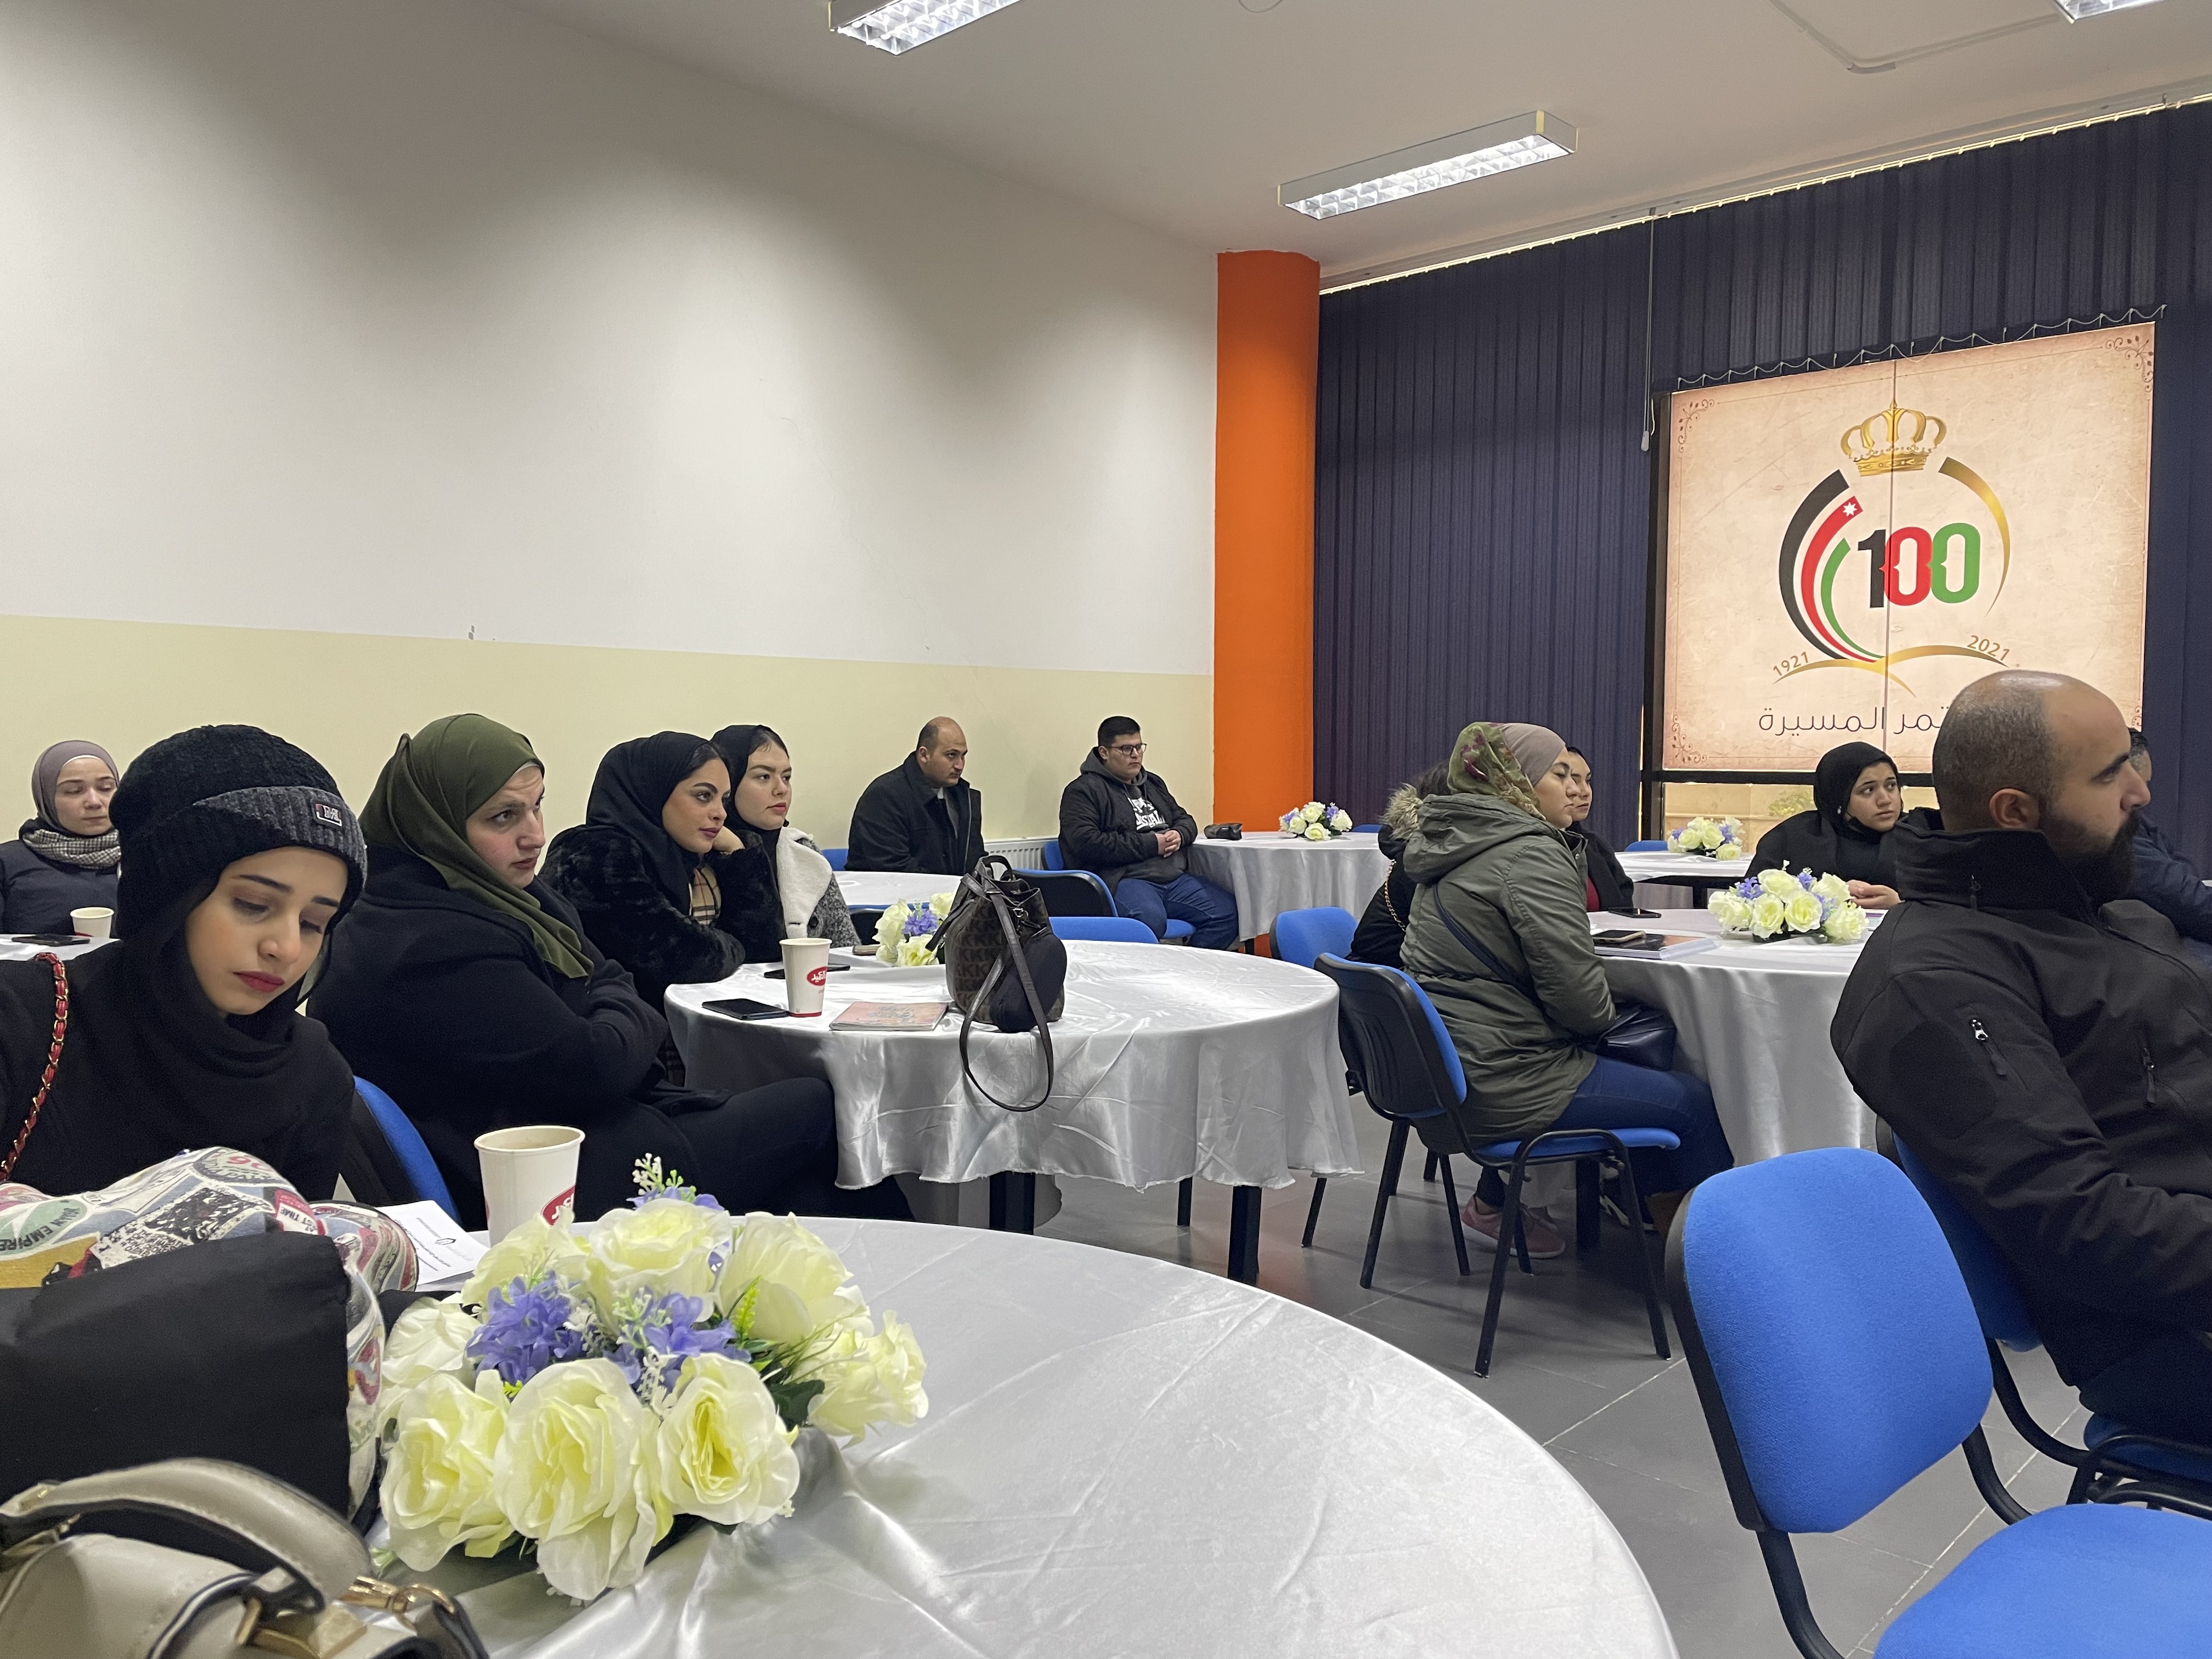 دورات وورشات تدريبية لمكتب الإرشاد الوظيفي ومتابعة الخريجين في "عمان العربية"2